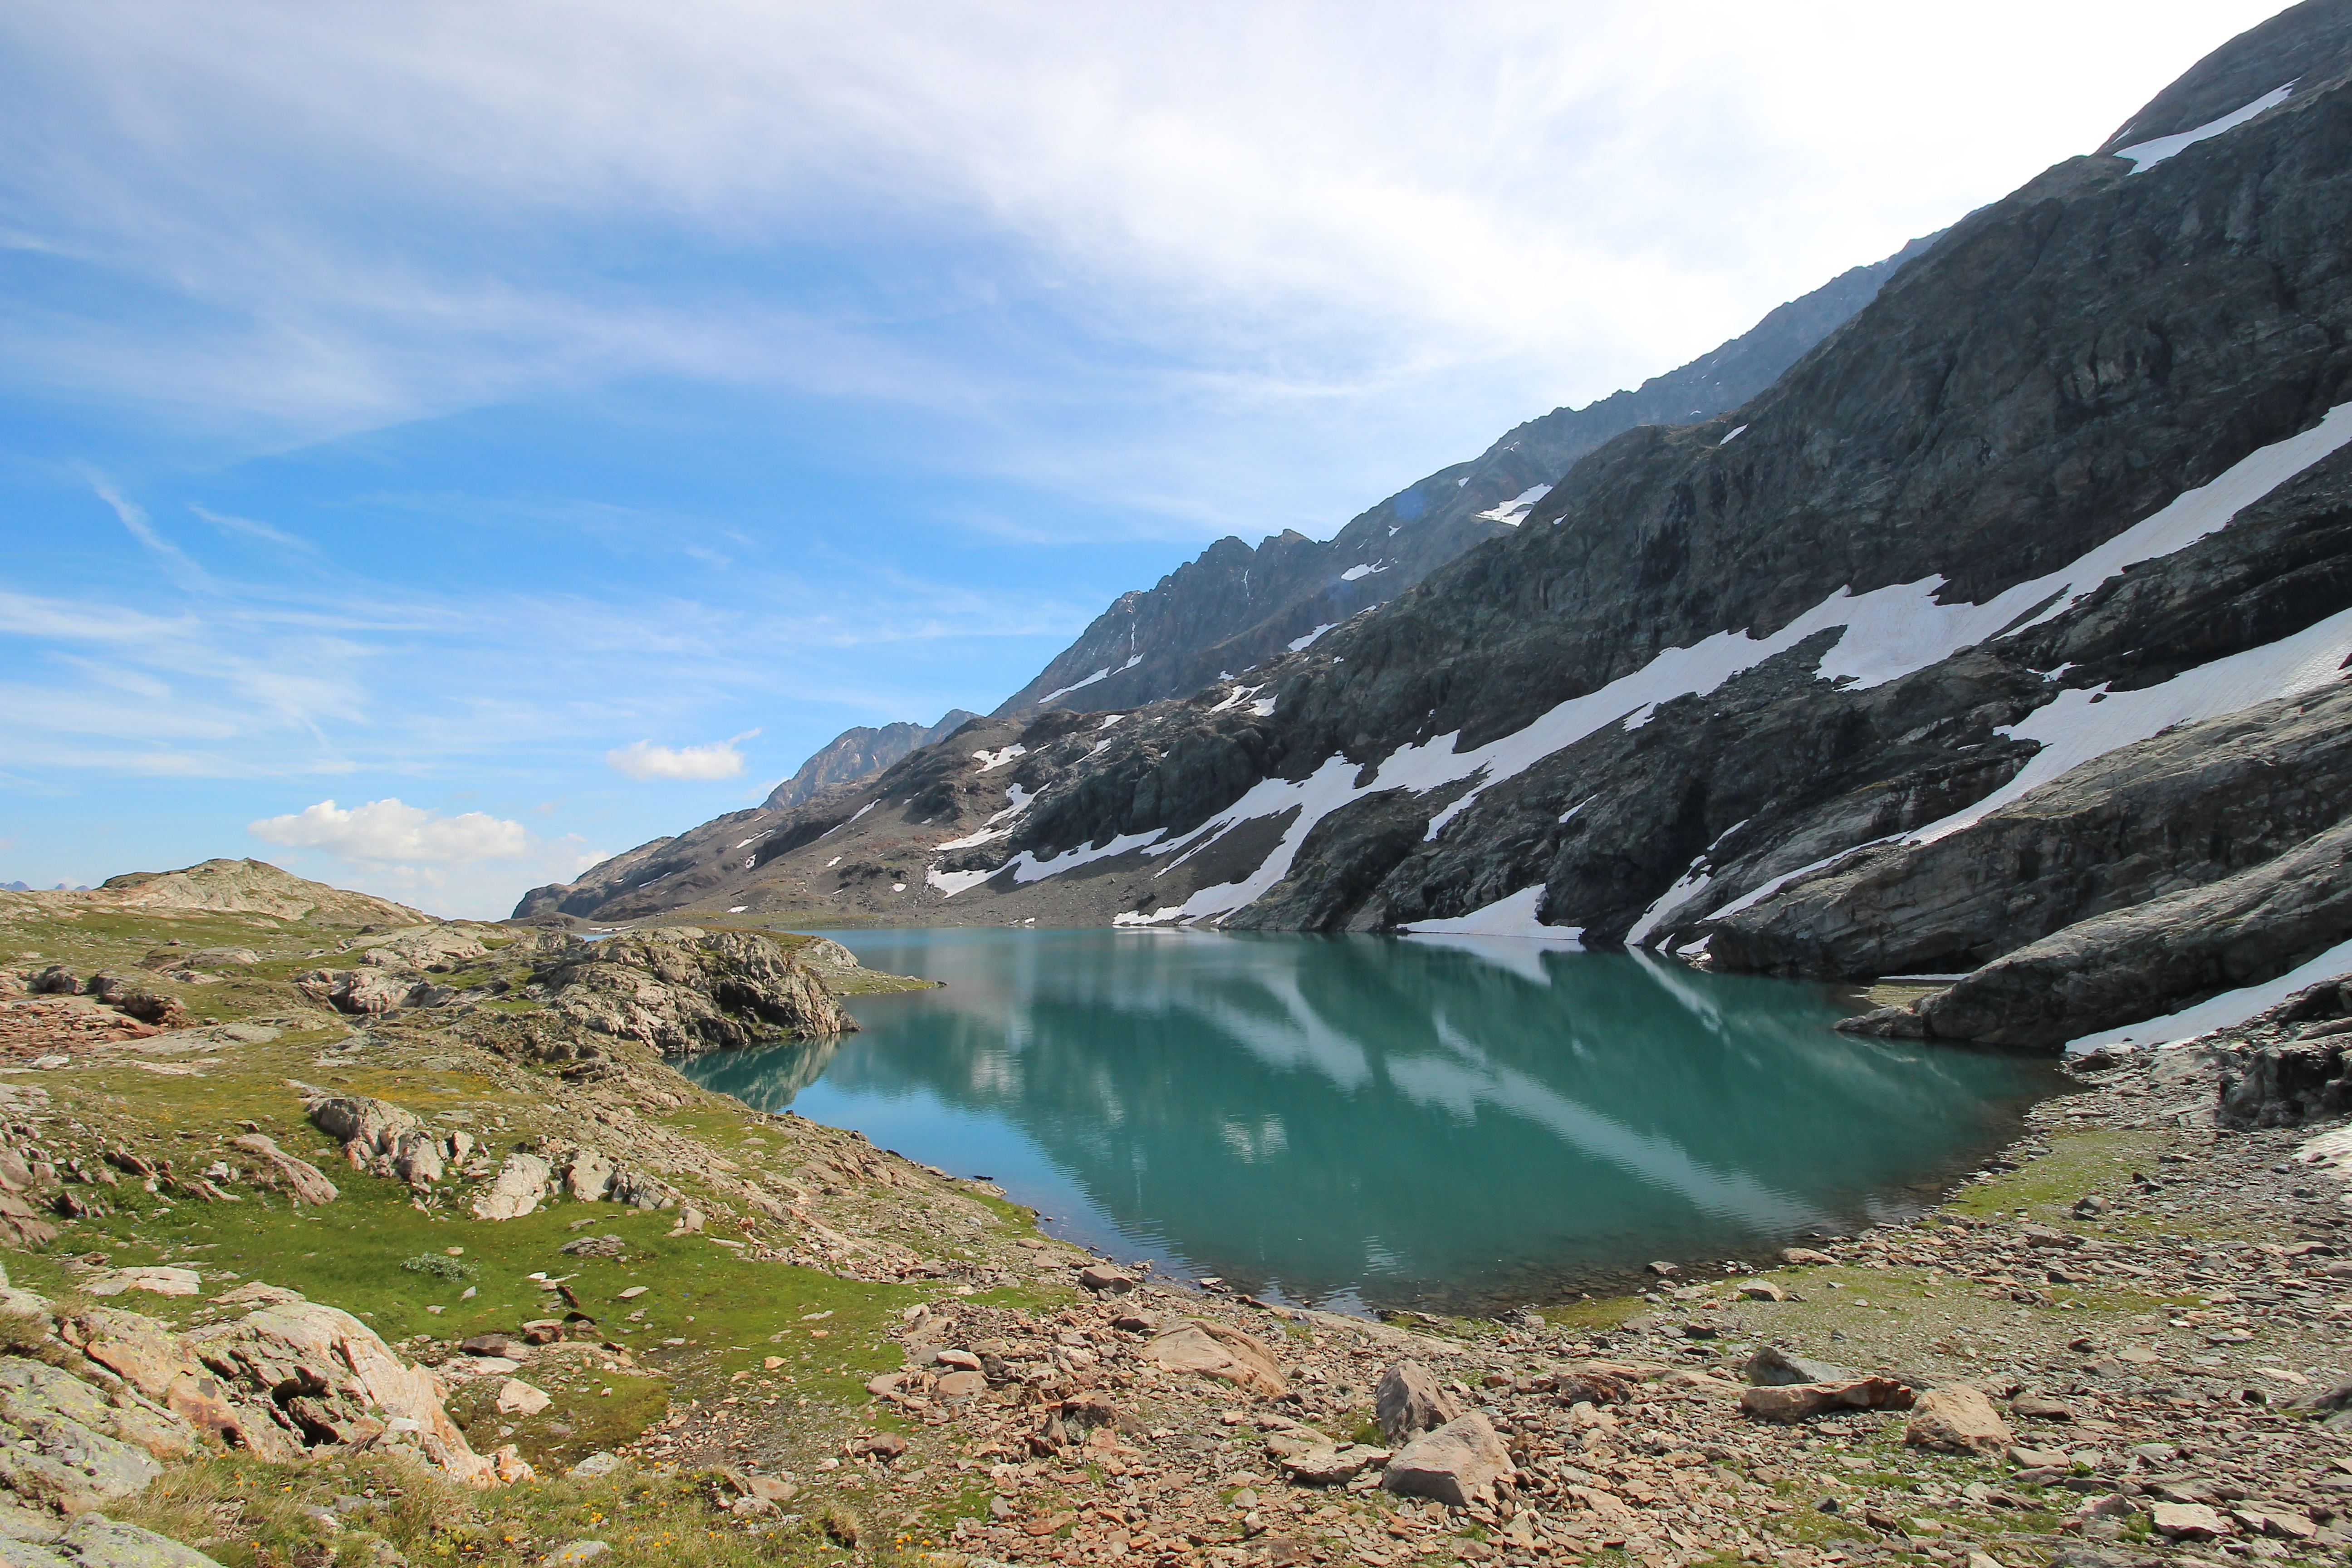 Les Lacs supérieurs | Isère Tourisme